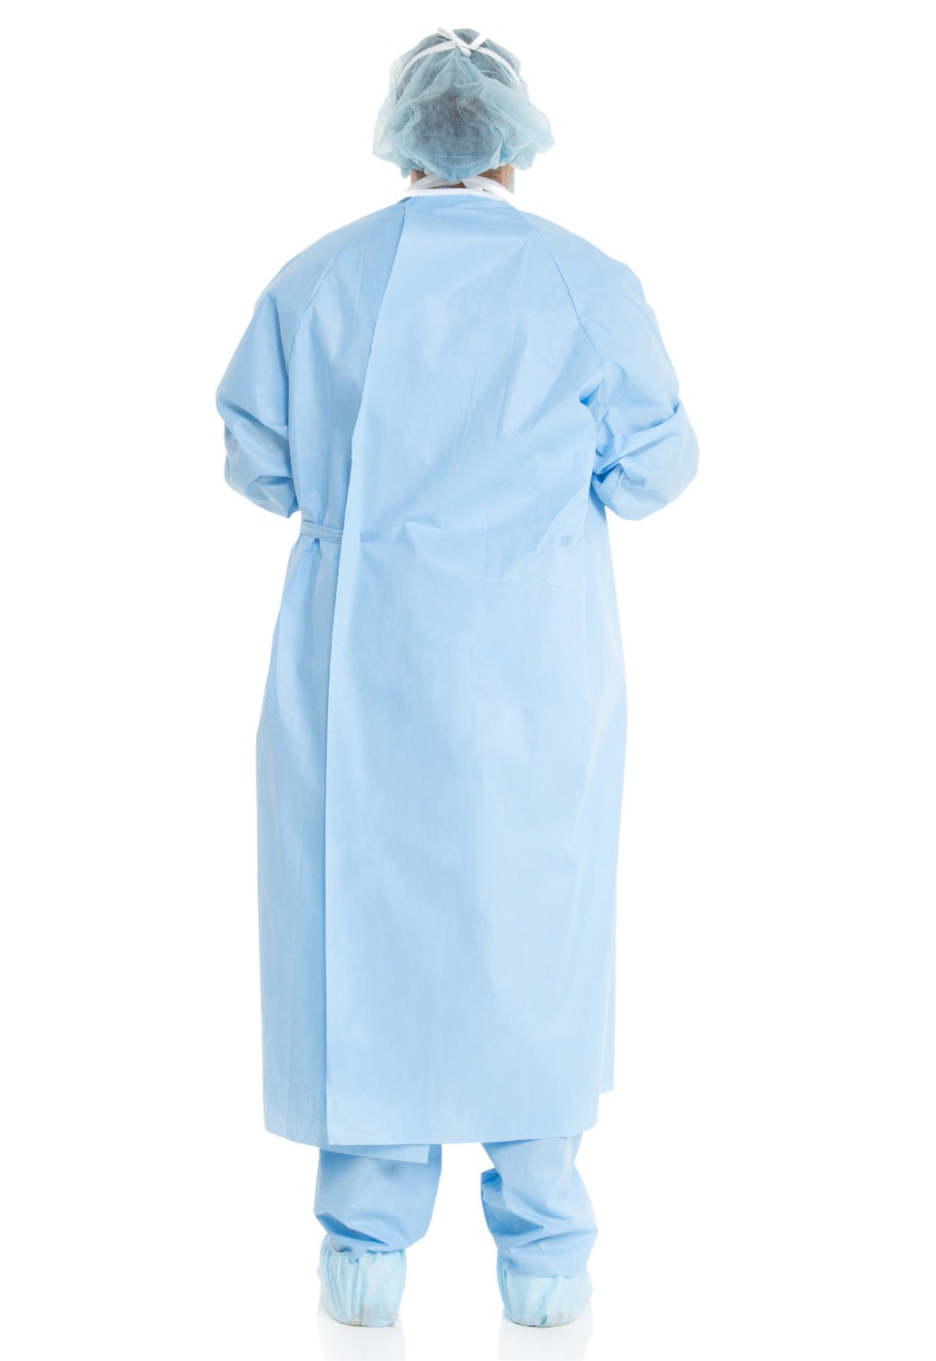 HALYARD BASICS* Non-Reinforced Surgical Gown, Adjustable Hook & Loop Neckline, Sterile, Size Large, Level 1